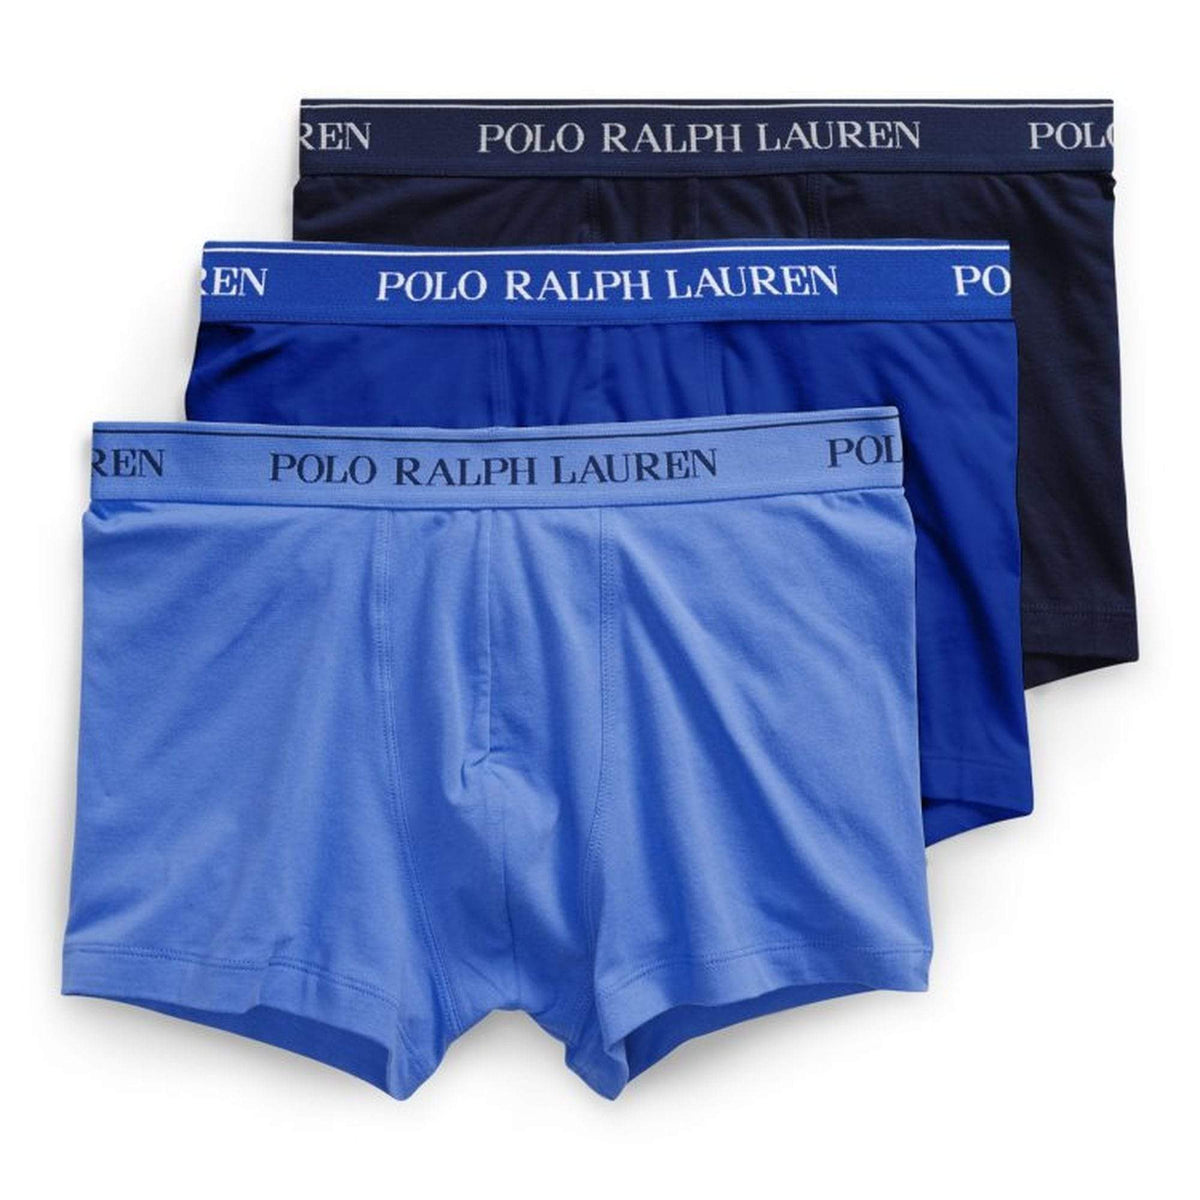 Polo Ralph Lauren - Underwear - Polo Ralph Lauren Stretch Boxer Brief 3-Pack